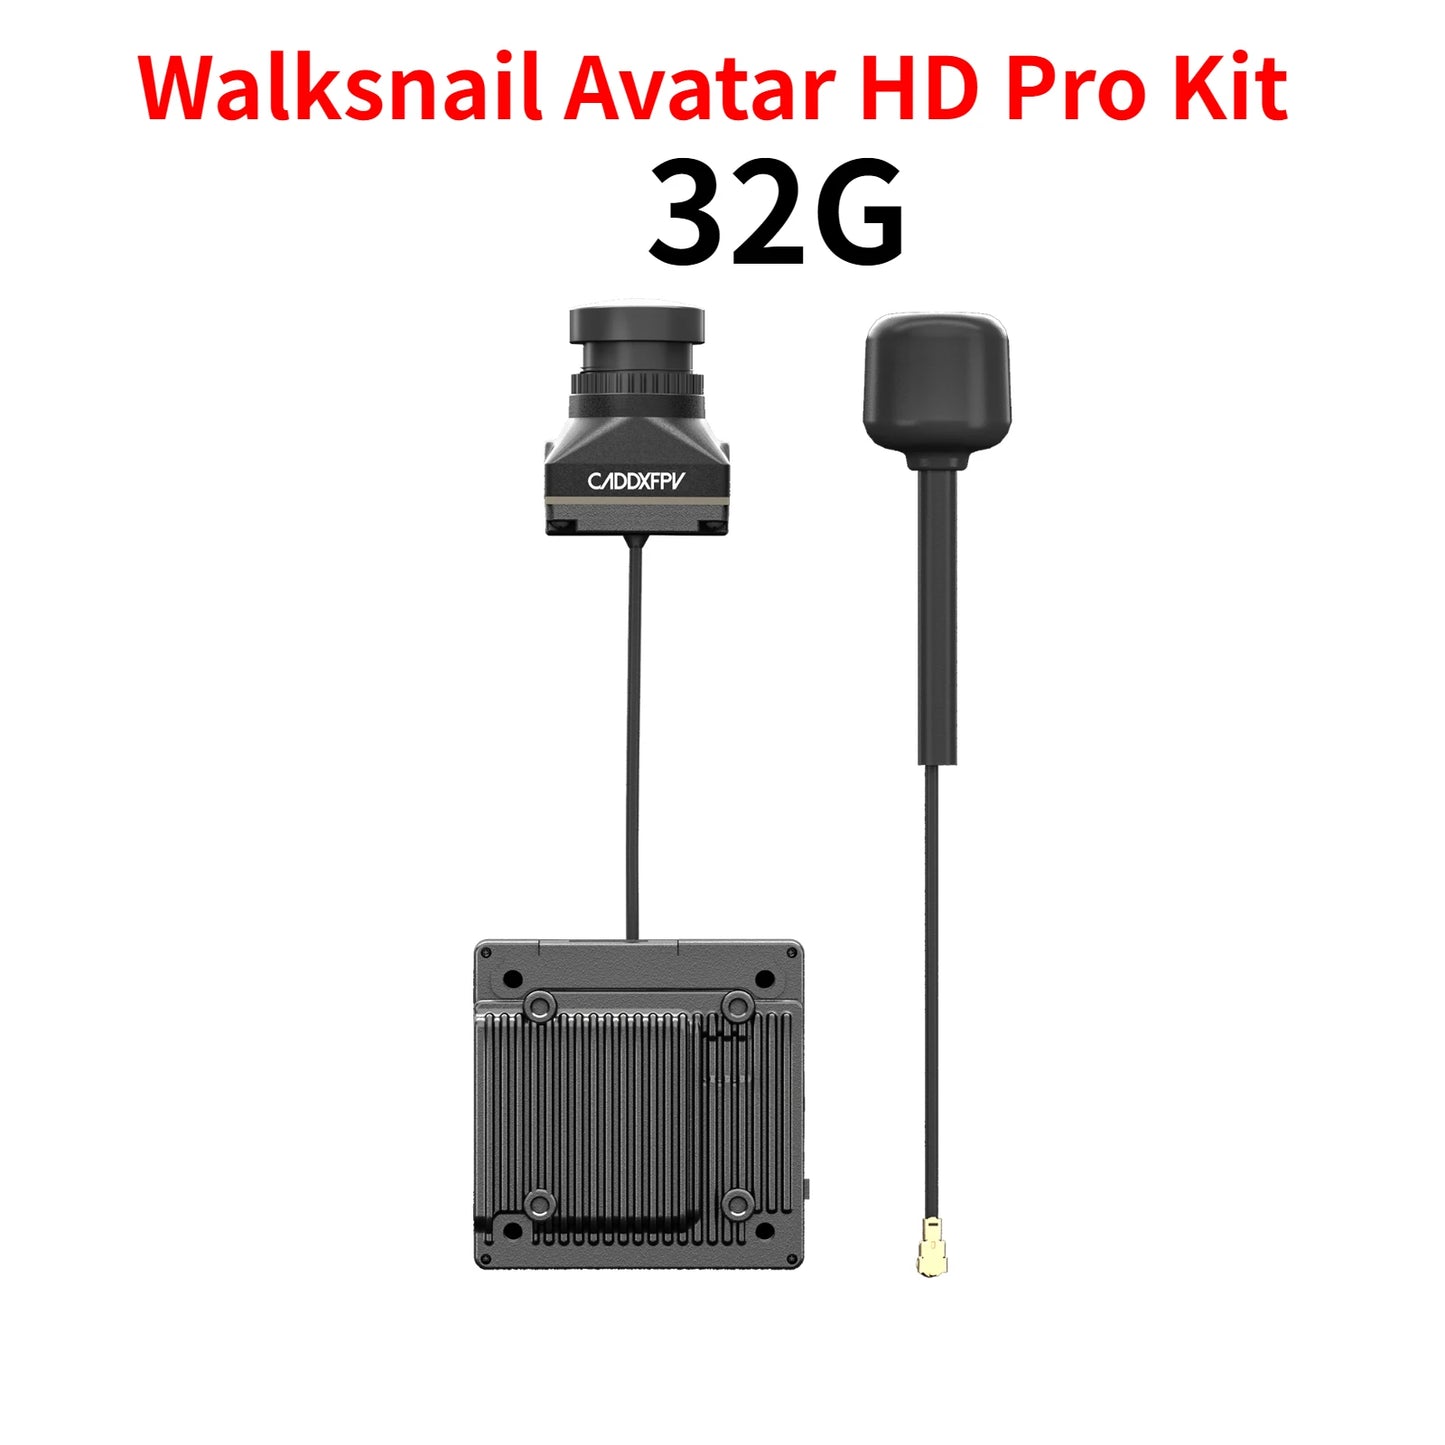 Walksnail Avatar HD Pro Kit 326 CADDXFPV B